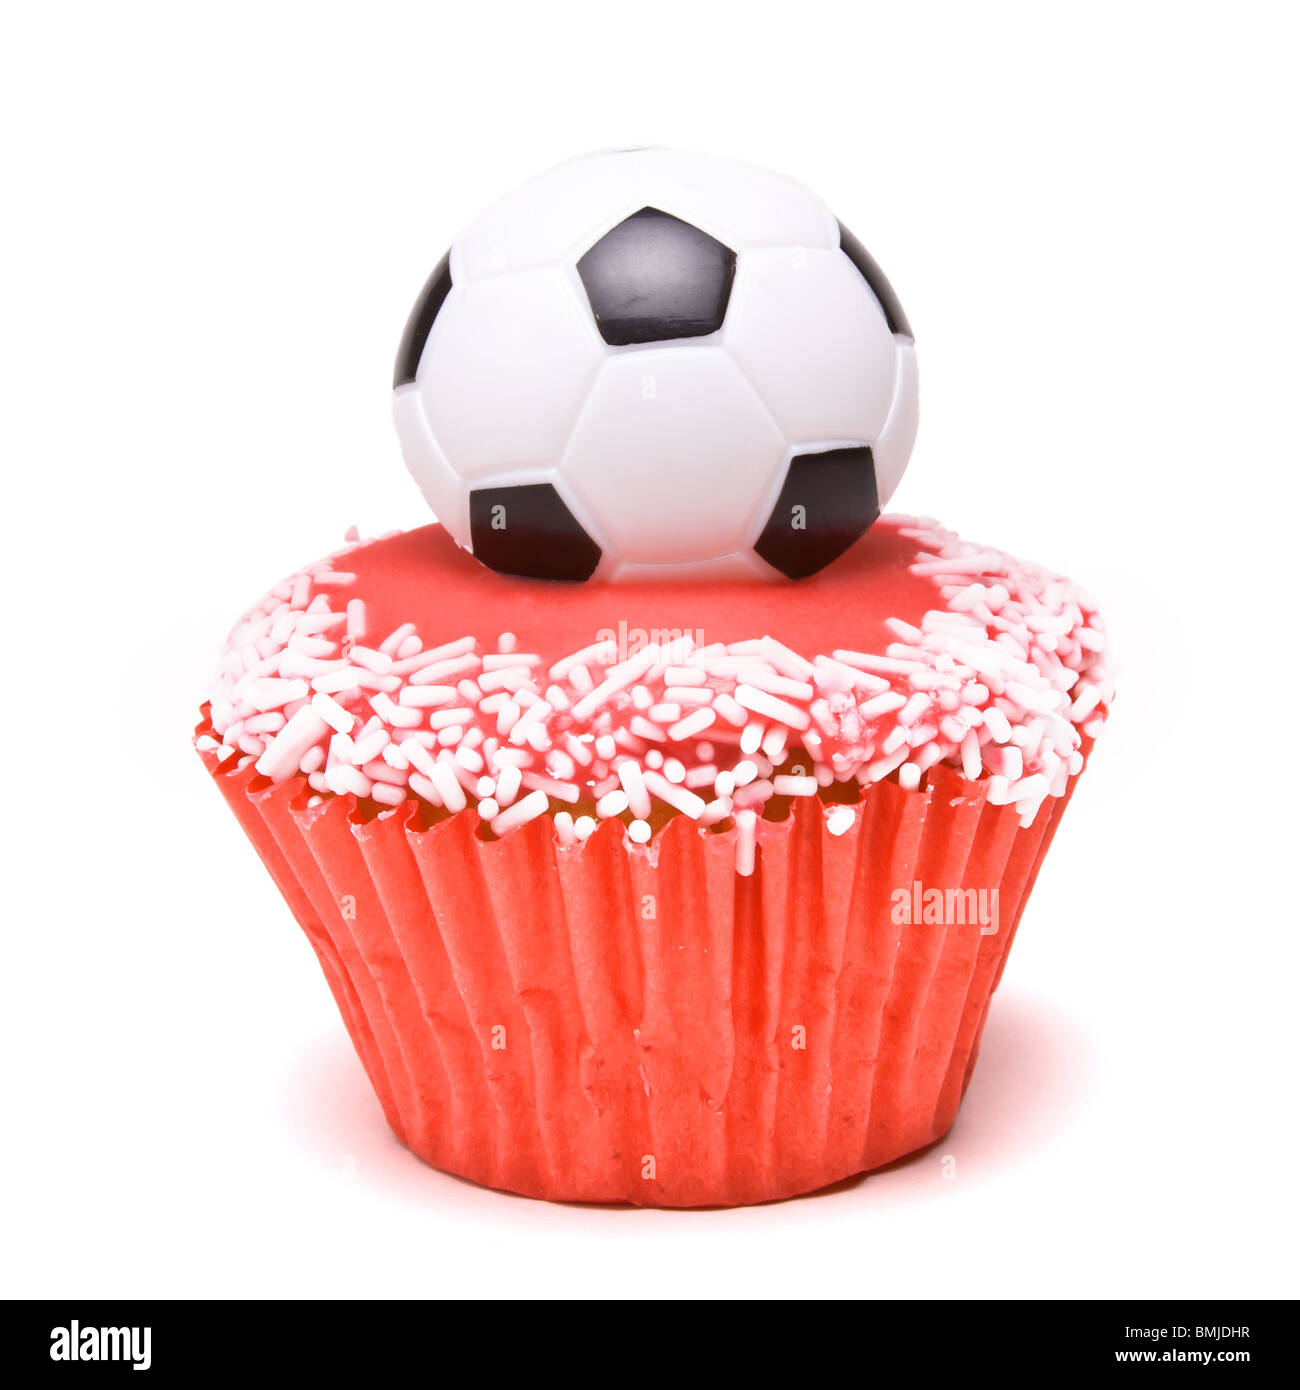 Soccer Cup Cake nei colori dell'Inghilterra di colore rosso e bianco per i tifosi di calcio. Foto Stock